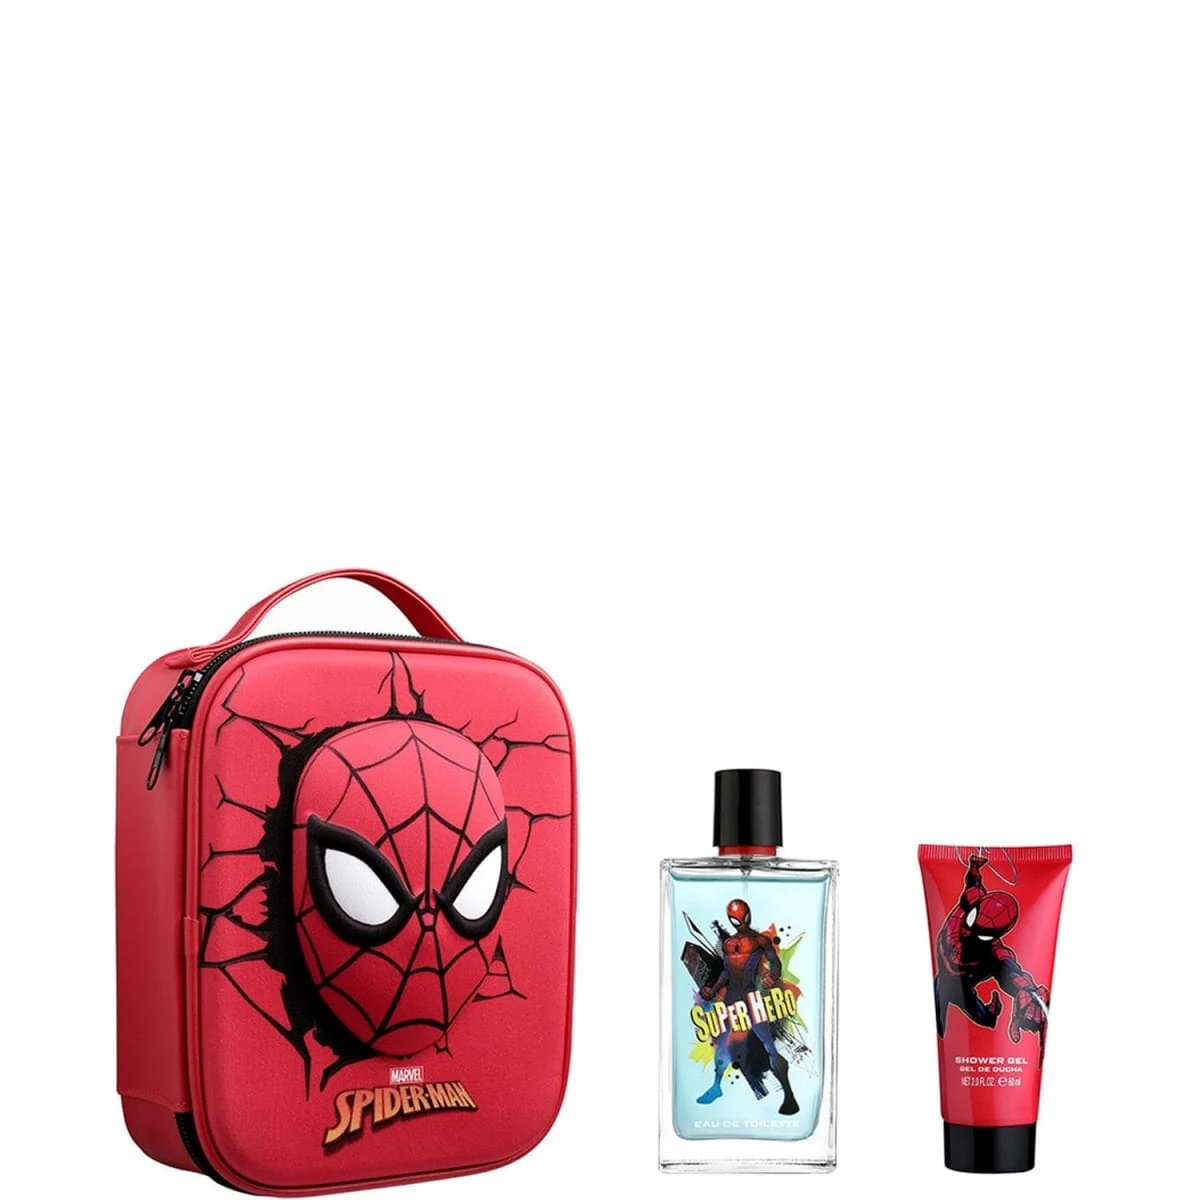 Spider-Man Coffret Cadeau - Eau De Toilette Vaporisateur 100 ml